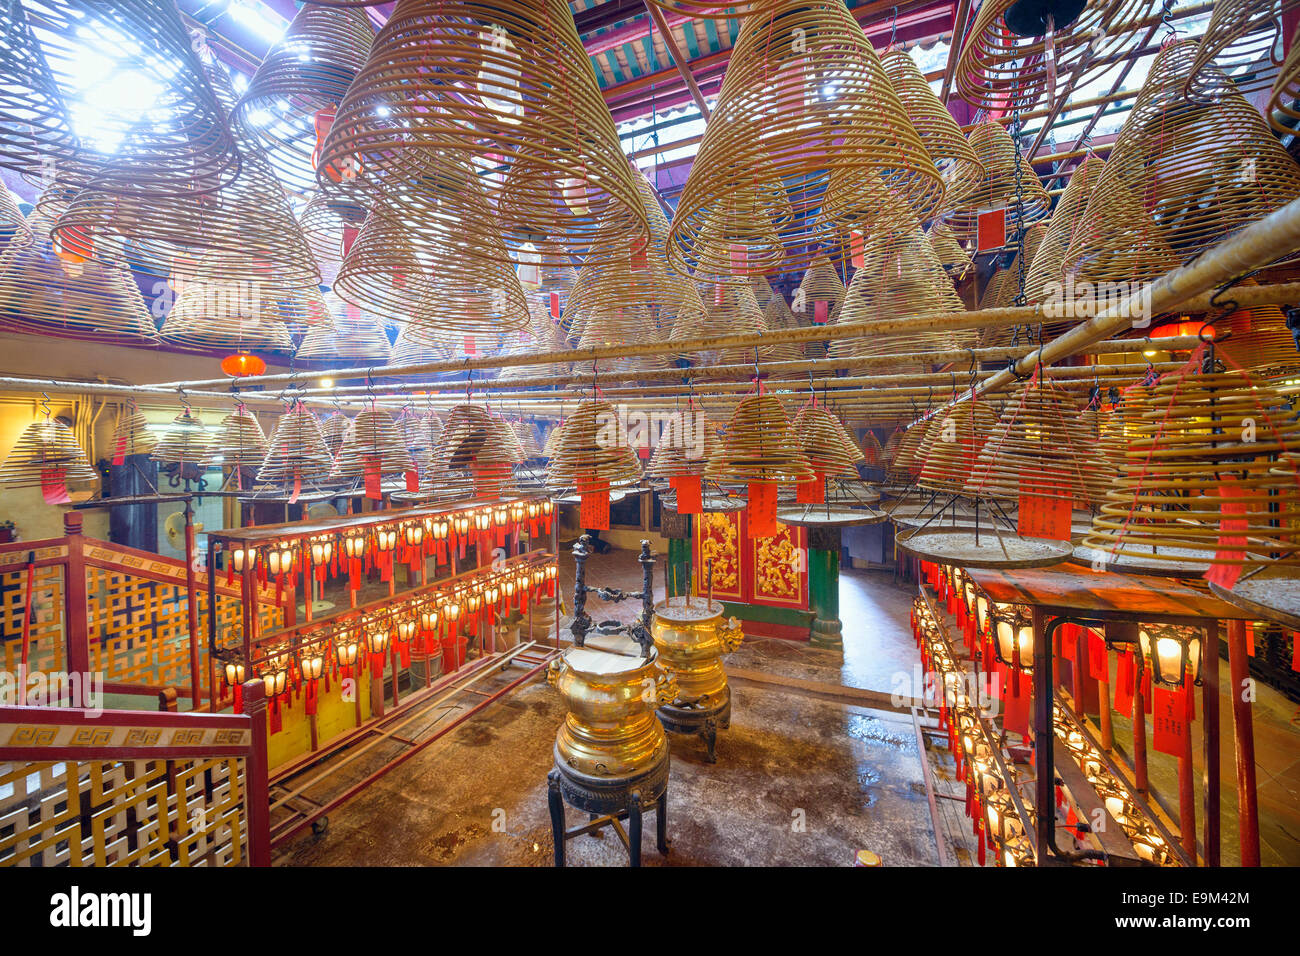 Man Mo Temple, Hong Kong, China incense coils. Stock Photo